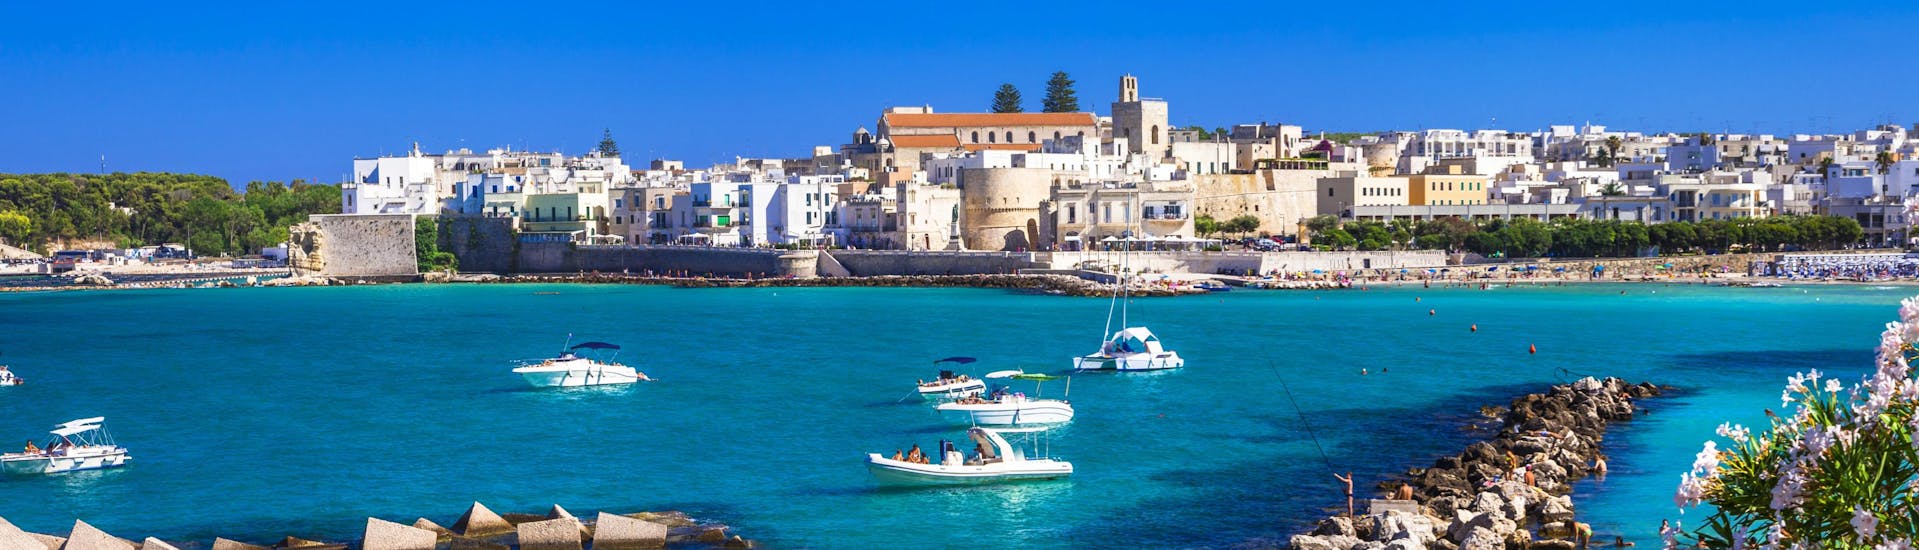 Die Stadt Otranto vom Meer aus gesehen, ein schöner Anblick, den man während einer Bootsfahrt genießen kann.